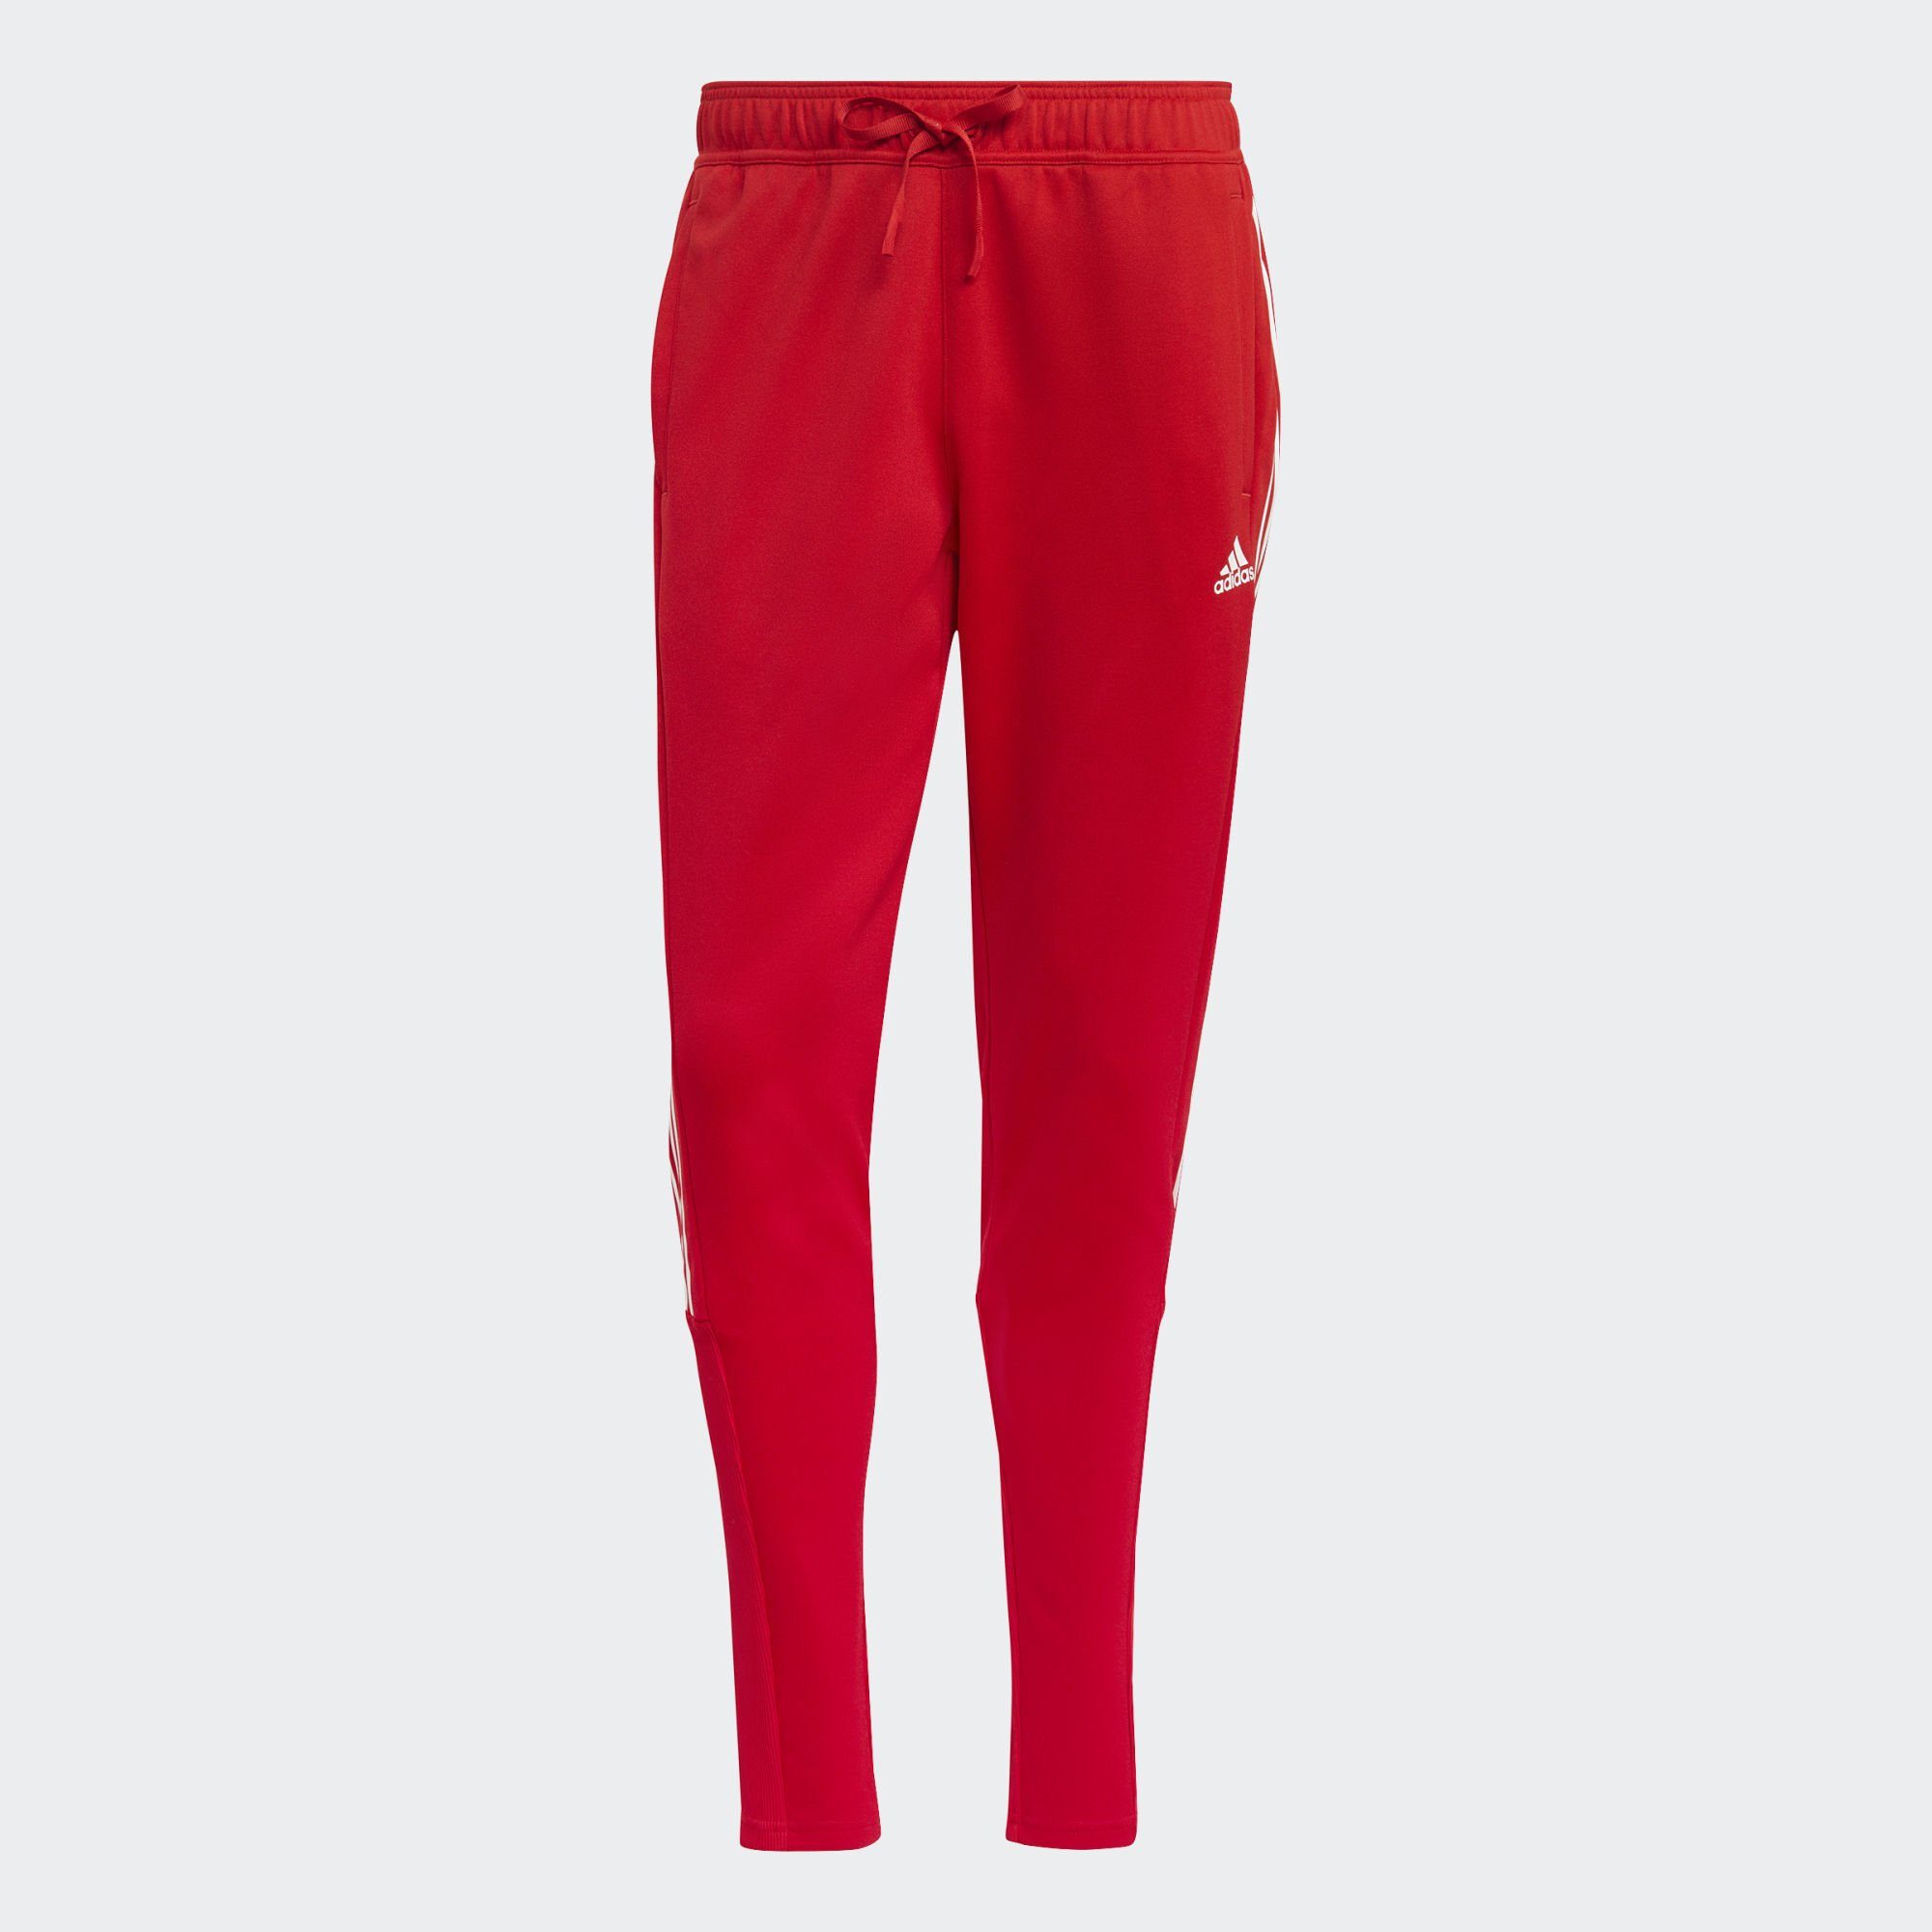 LIFESTYLE Better Leichtathletik-Hose Sportswear TRAININGSHOSE TIRO SUIT-UP Scarlet adidas